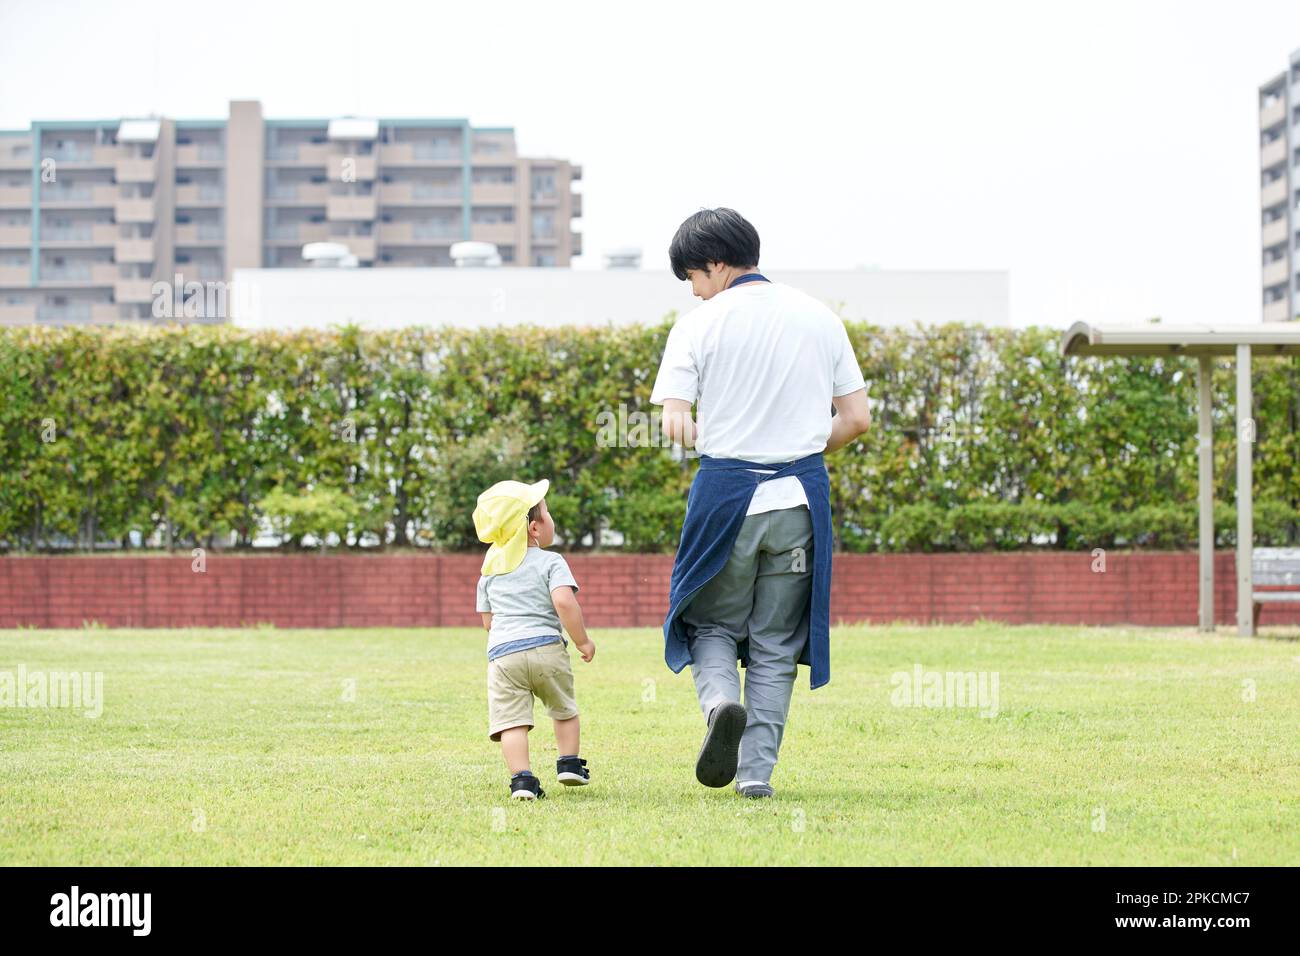 Männlicher Kinderbetreuer mit Kind, das auf dem Rasen spielt Stockfoto